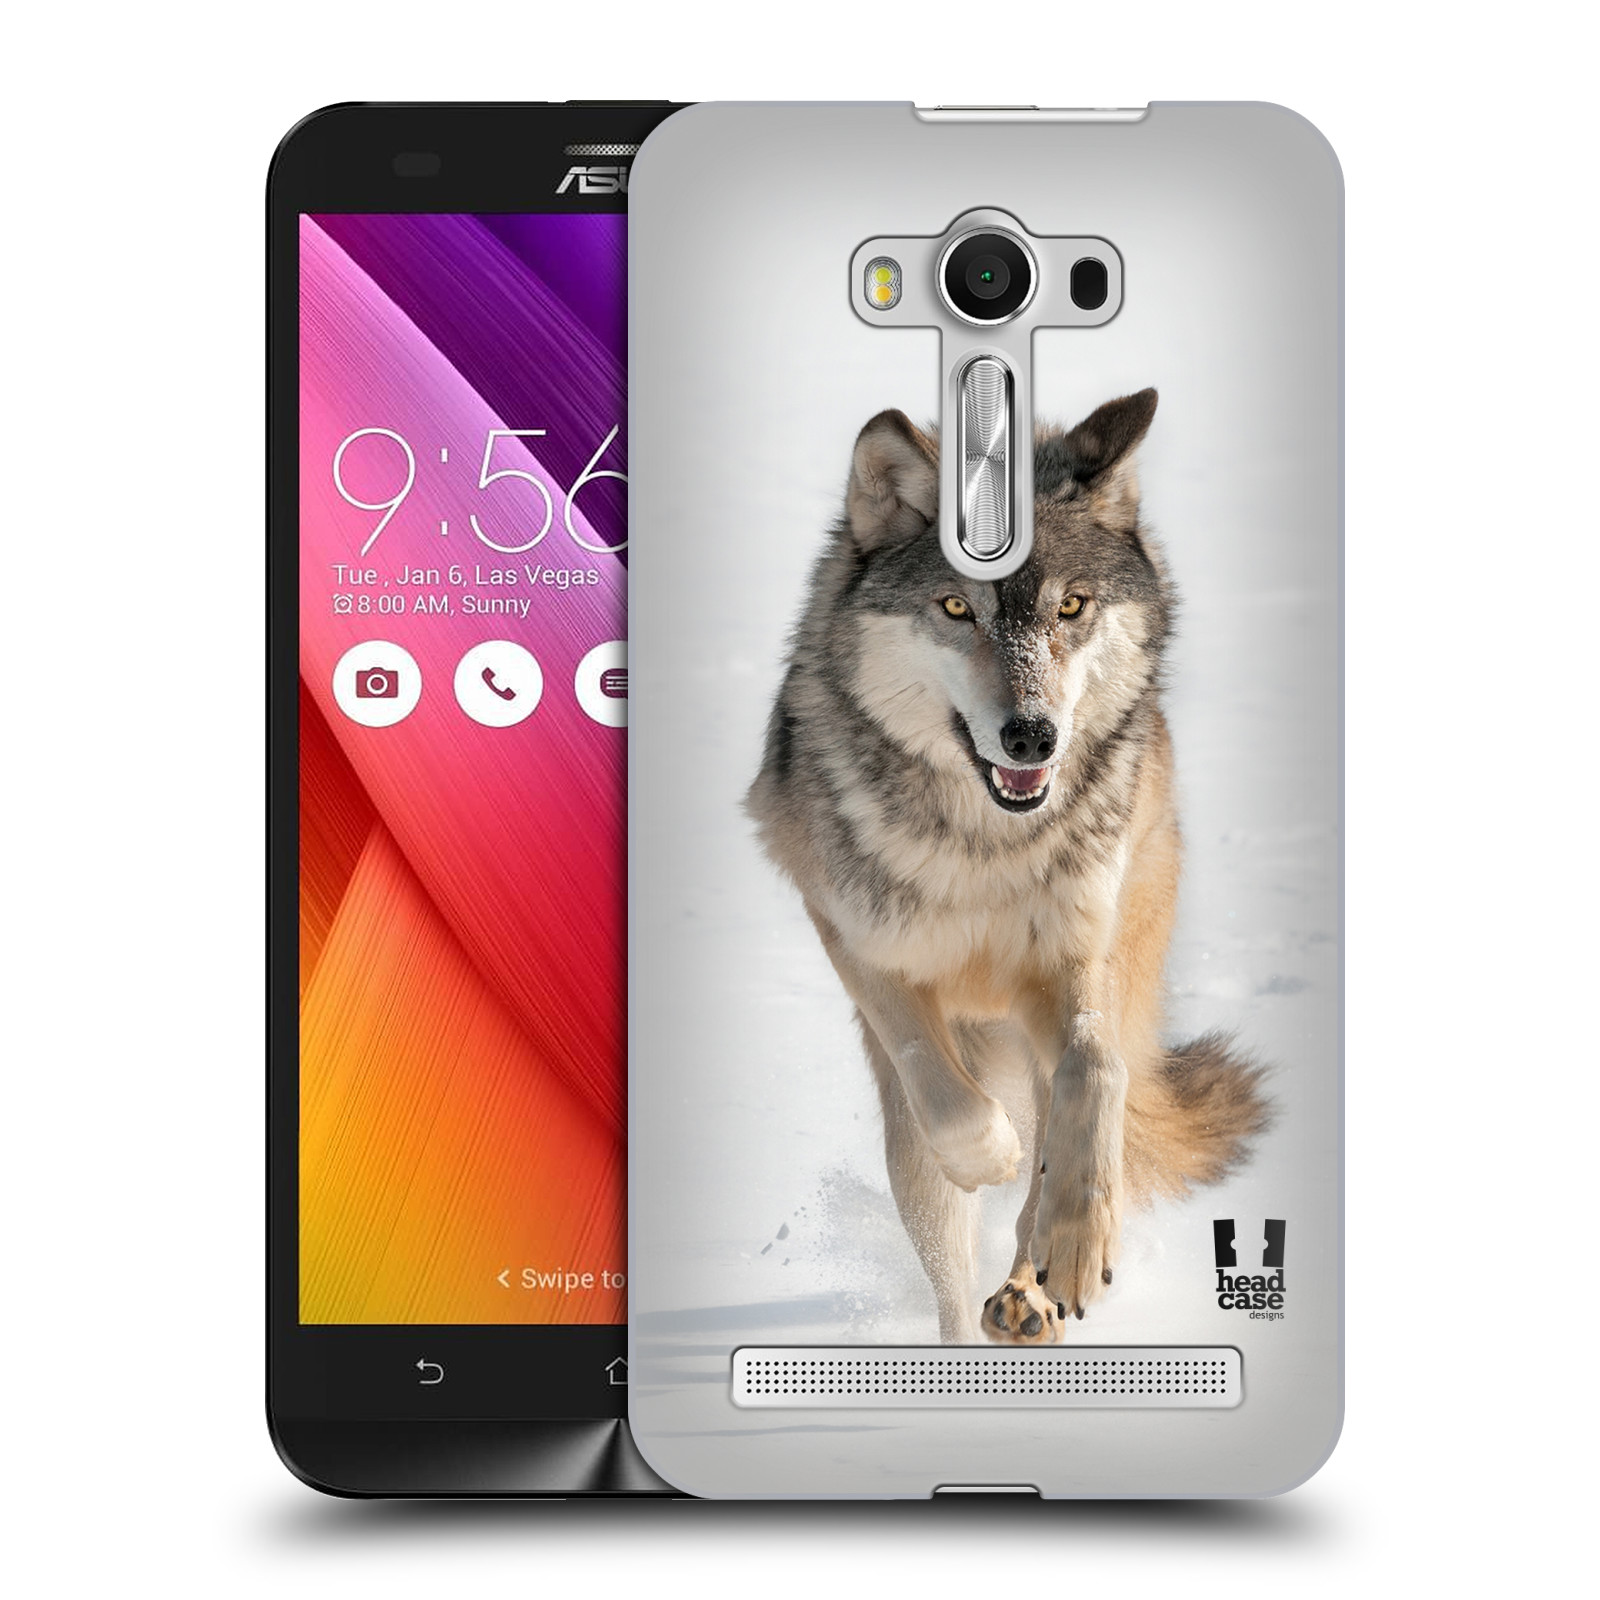 HEAD CASE plastový obal na mobil Asus Zenfone 2 LASER (5,5 displej ZE550KL) vzor Divočina, Divoký život a zvířata foto BĚŽÍCÍ VLK